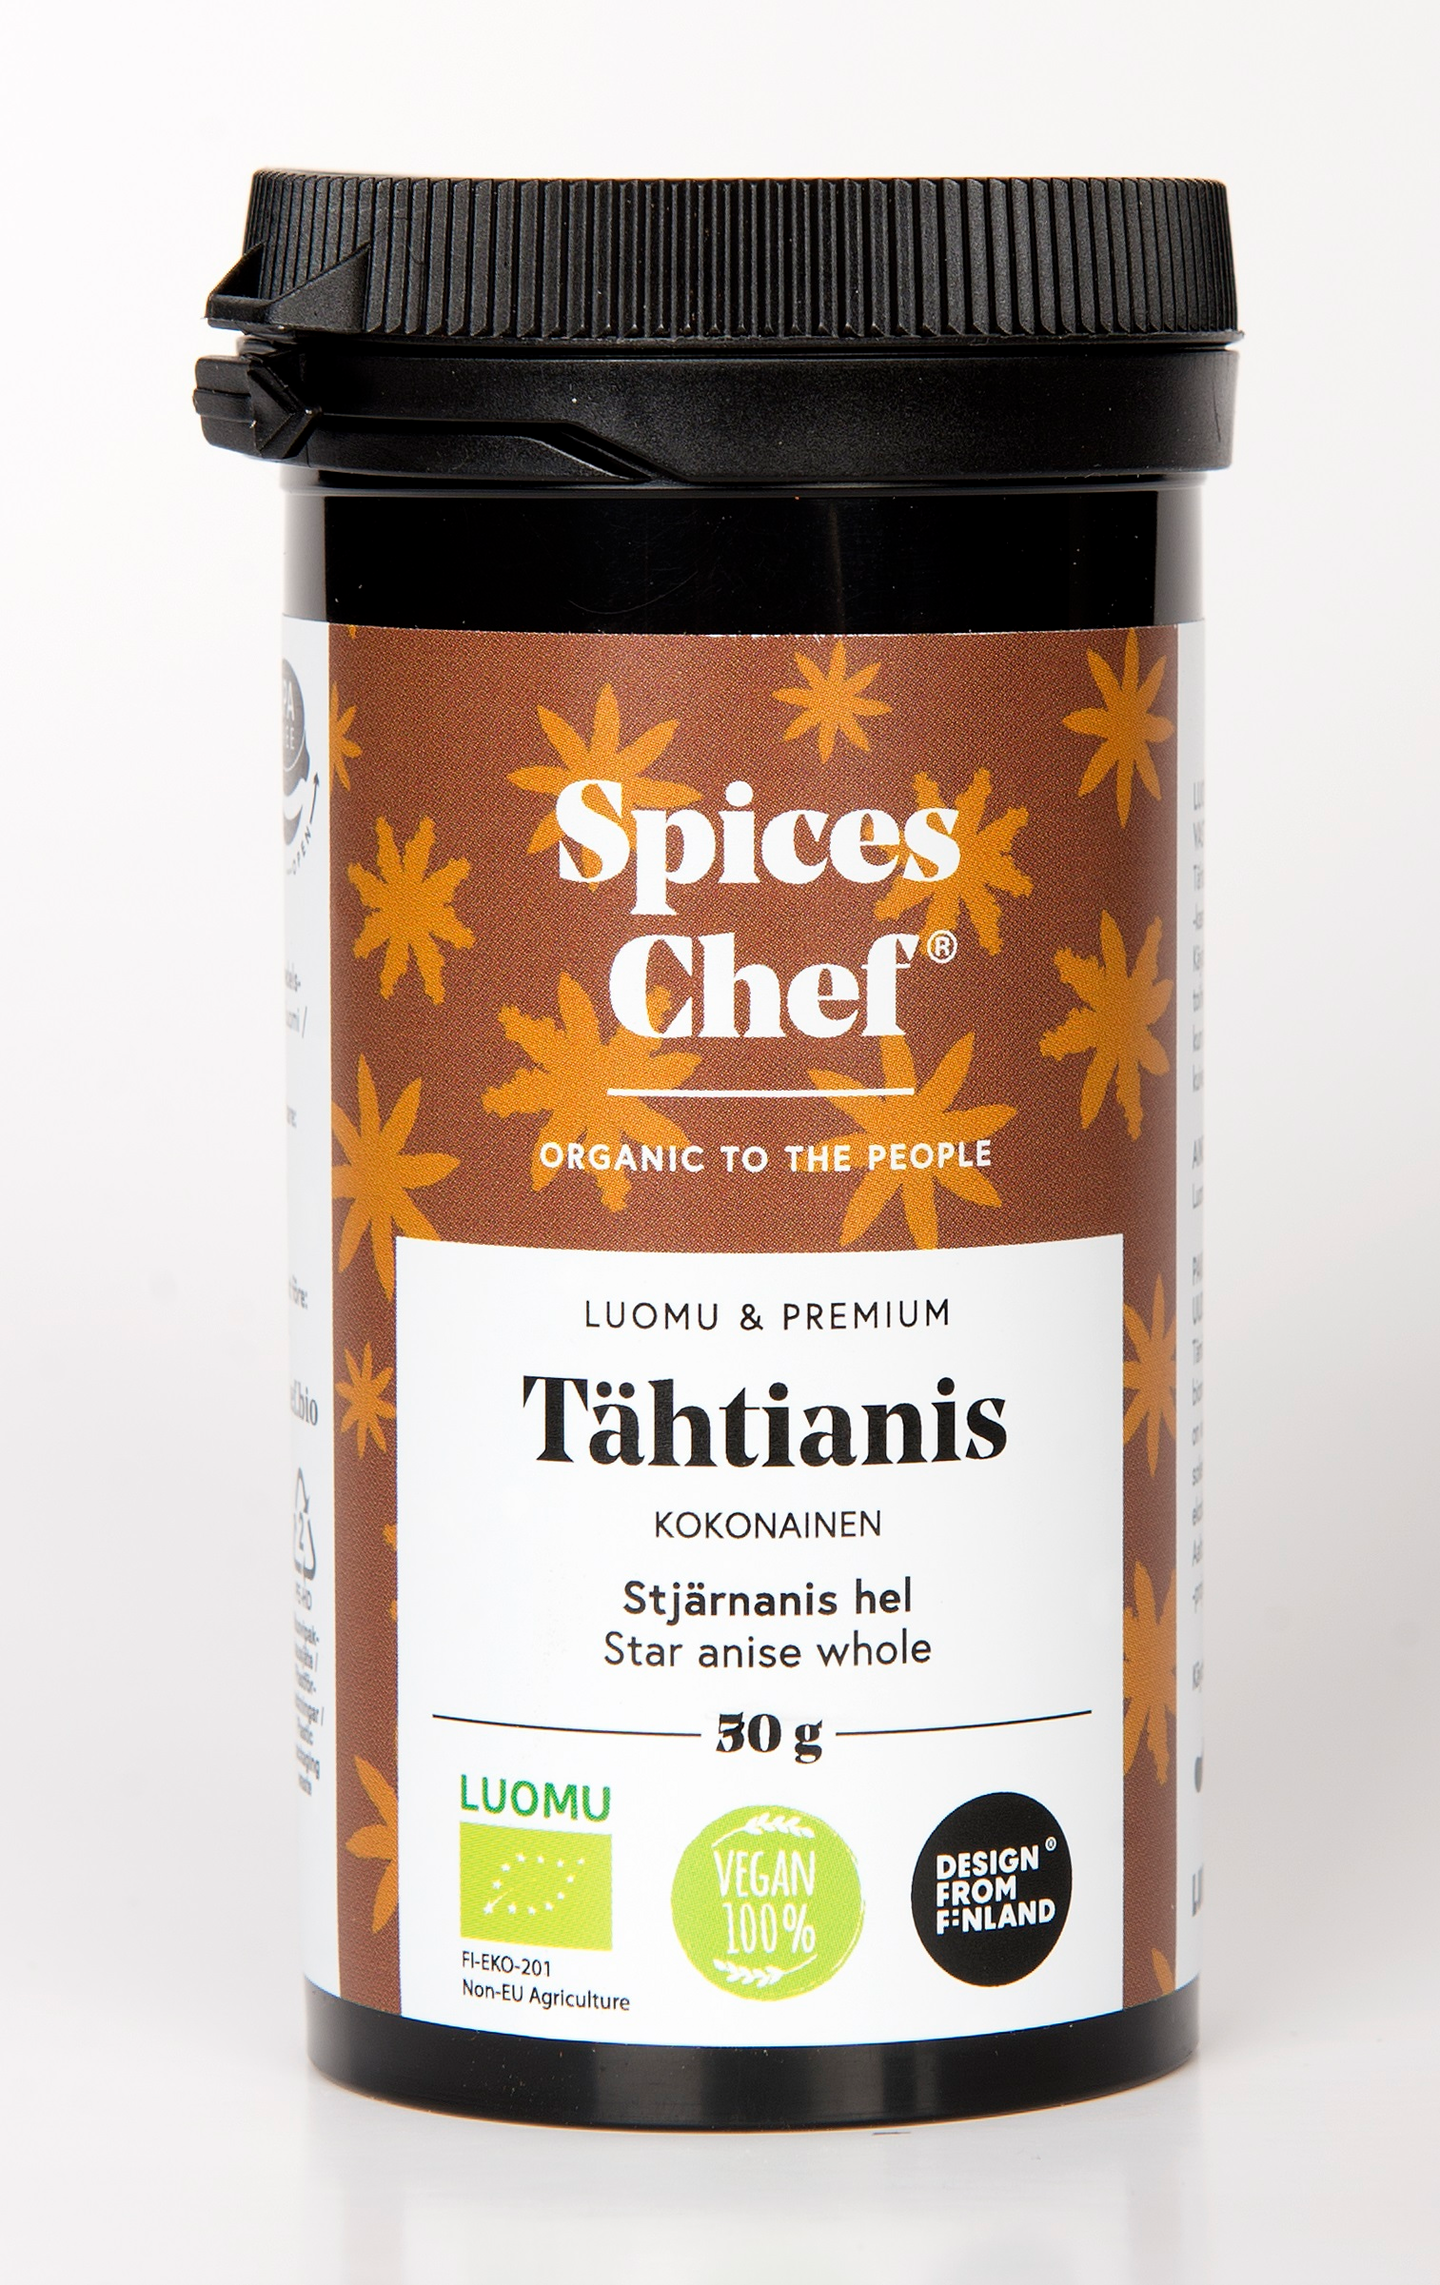 Spices Chef luomu tähtianis kokonainen 30g BPA-vapaassa biomuovi maustepurkissa.